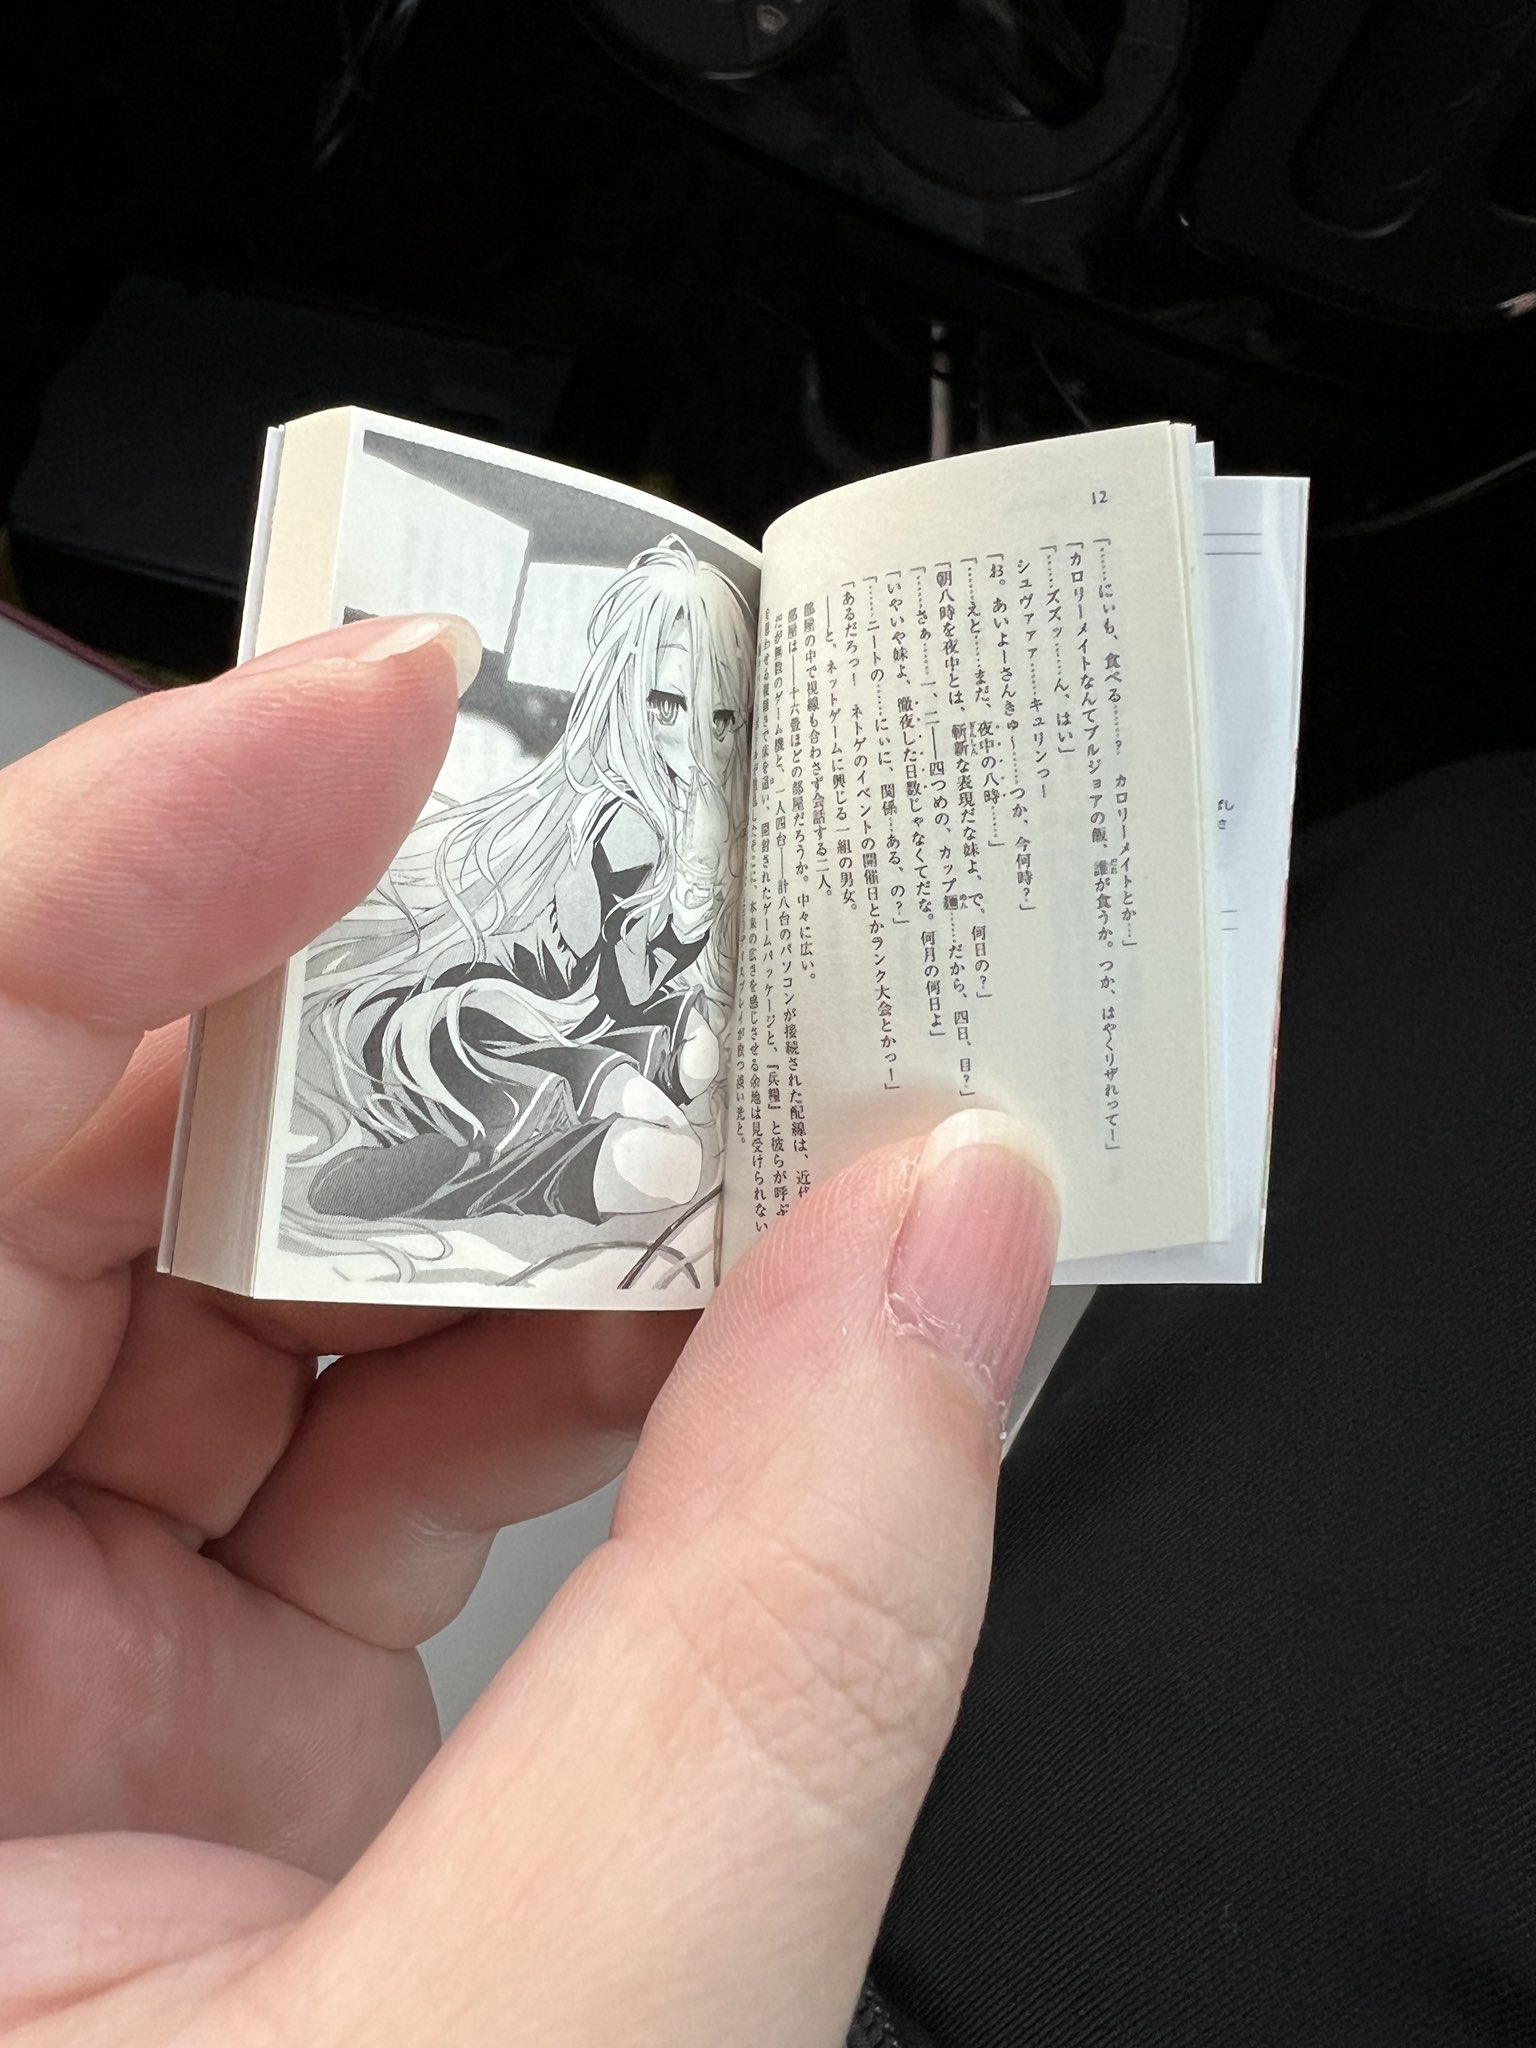 比轻小说还“轻”的小说 日本网友从扭蛋中开出微缩版《游戏人生》第一卷全本